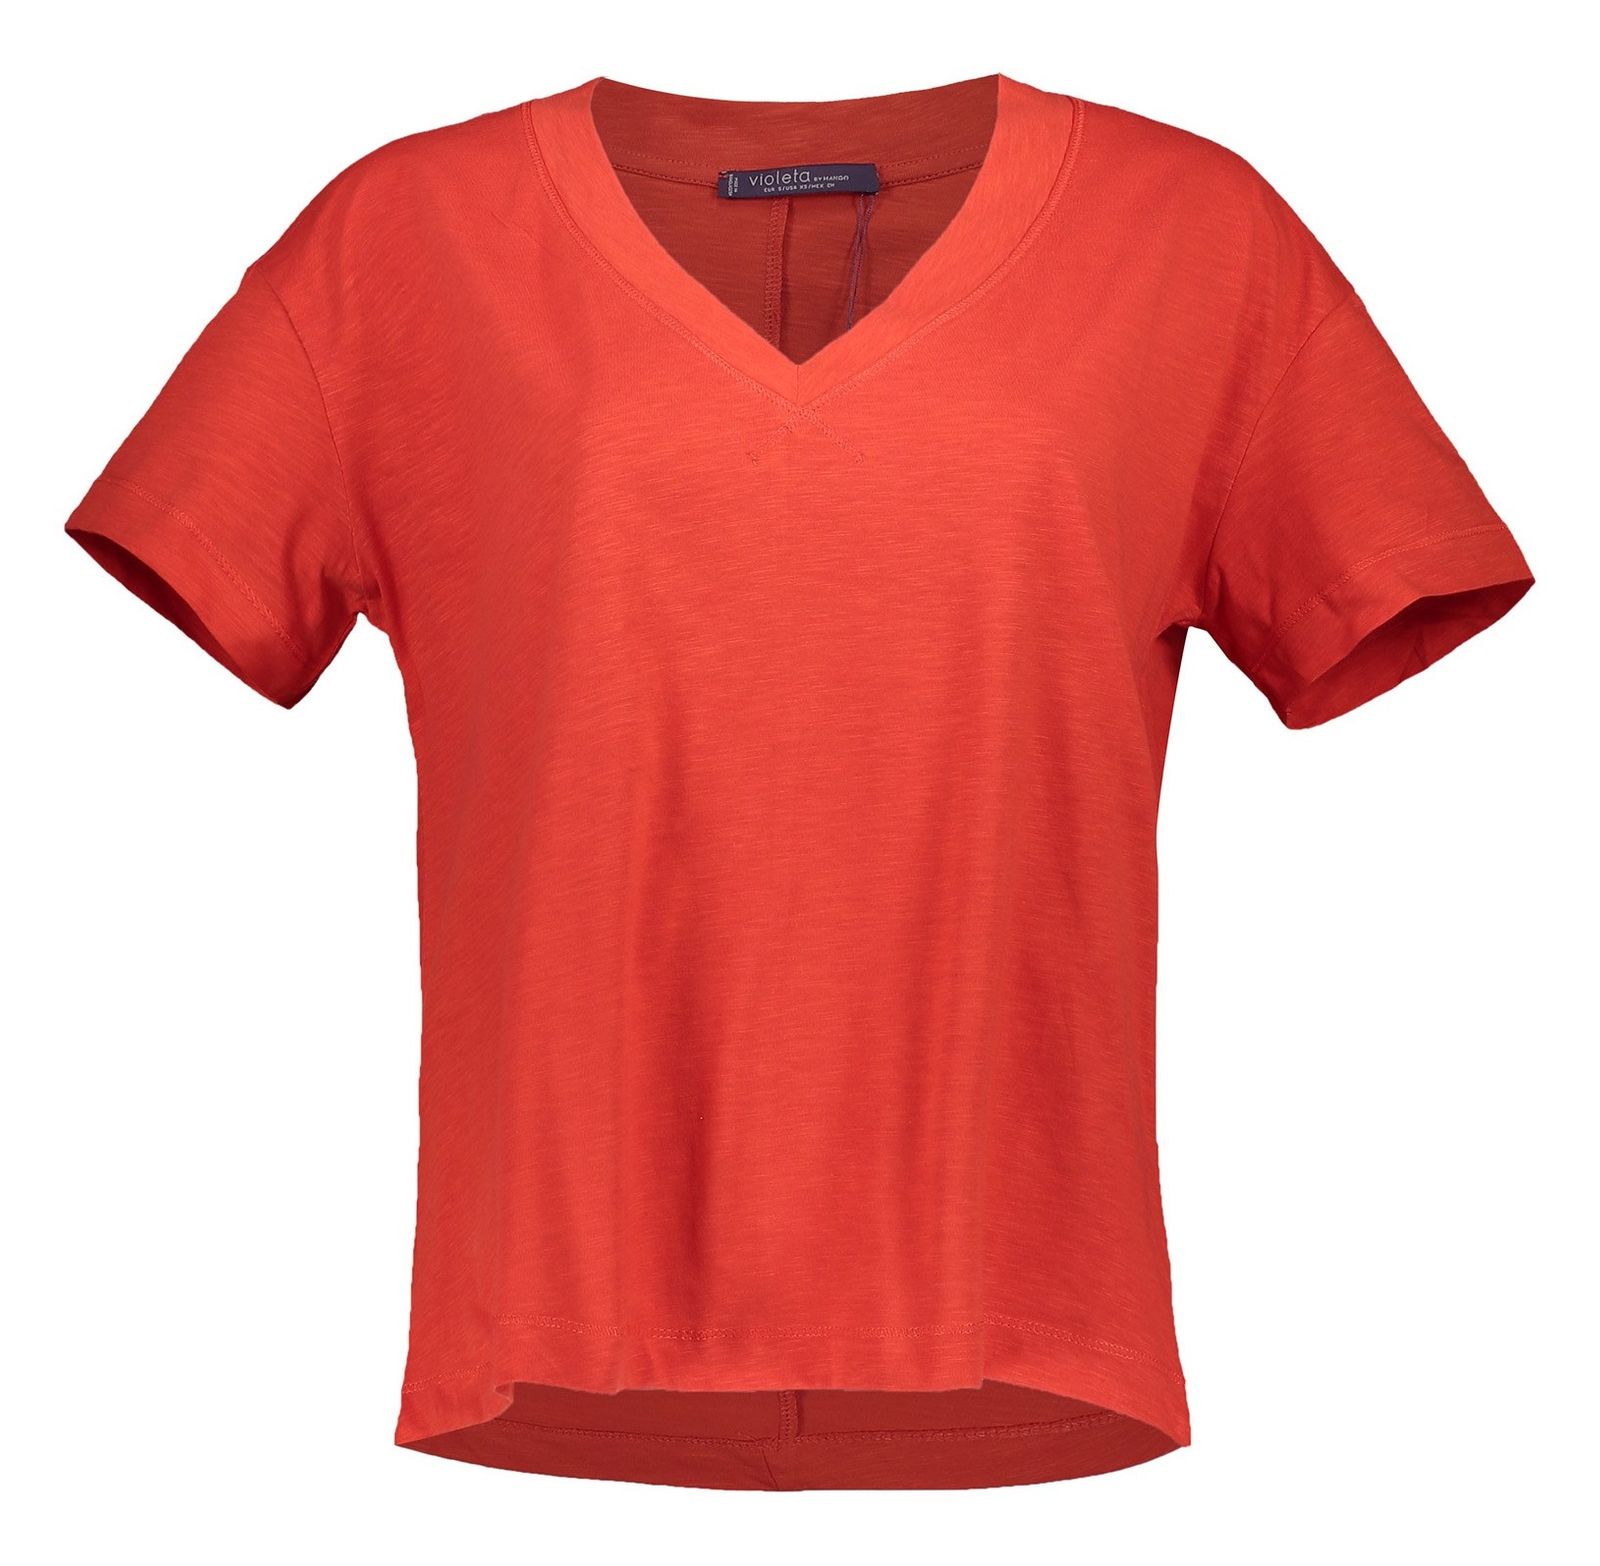 تی شرت نخی یقه هفت زنانه - ویولتا بای مانگو - قرمز - 1